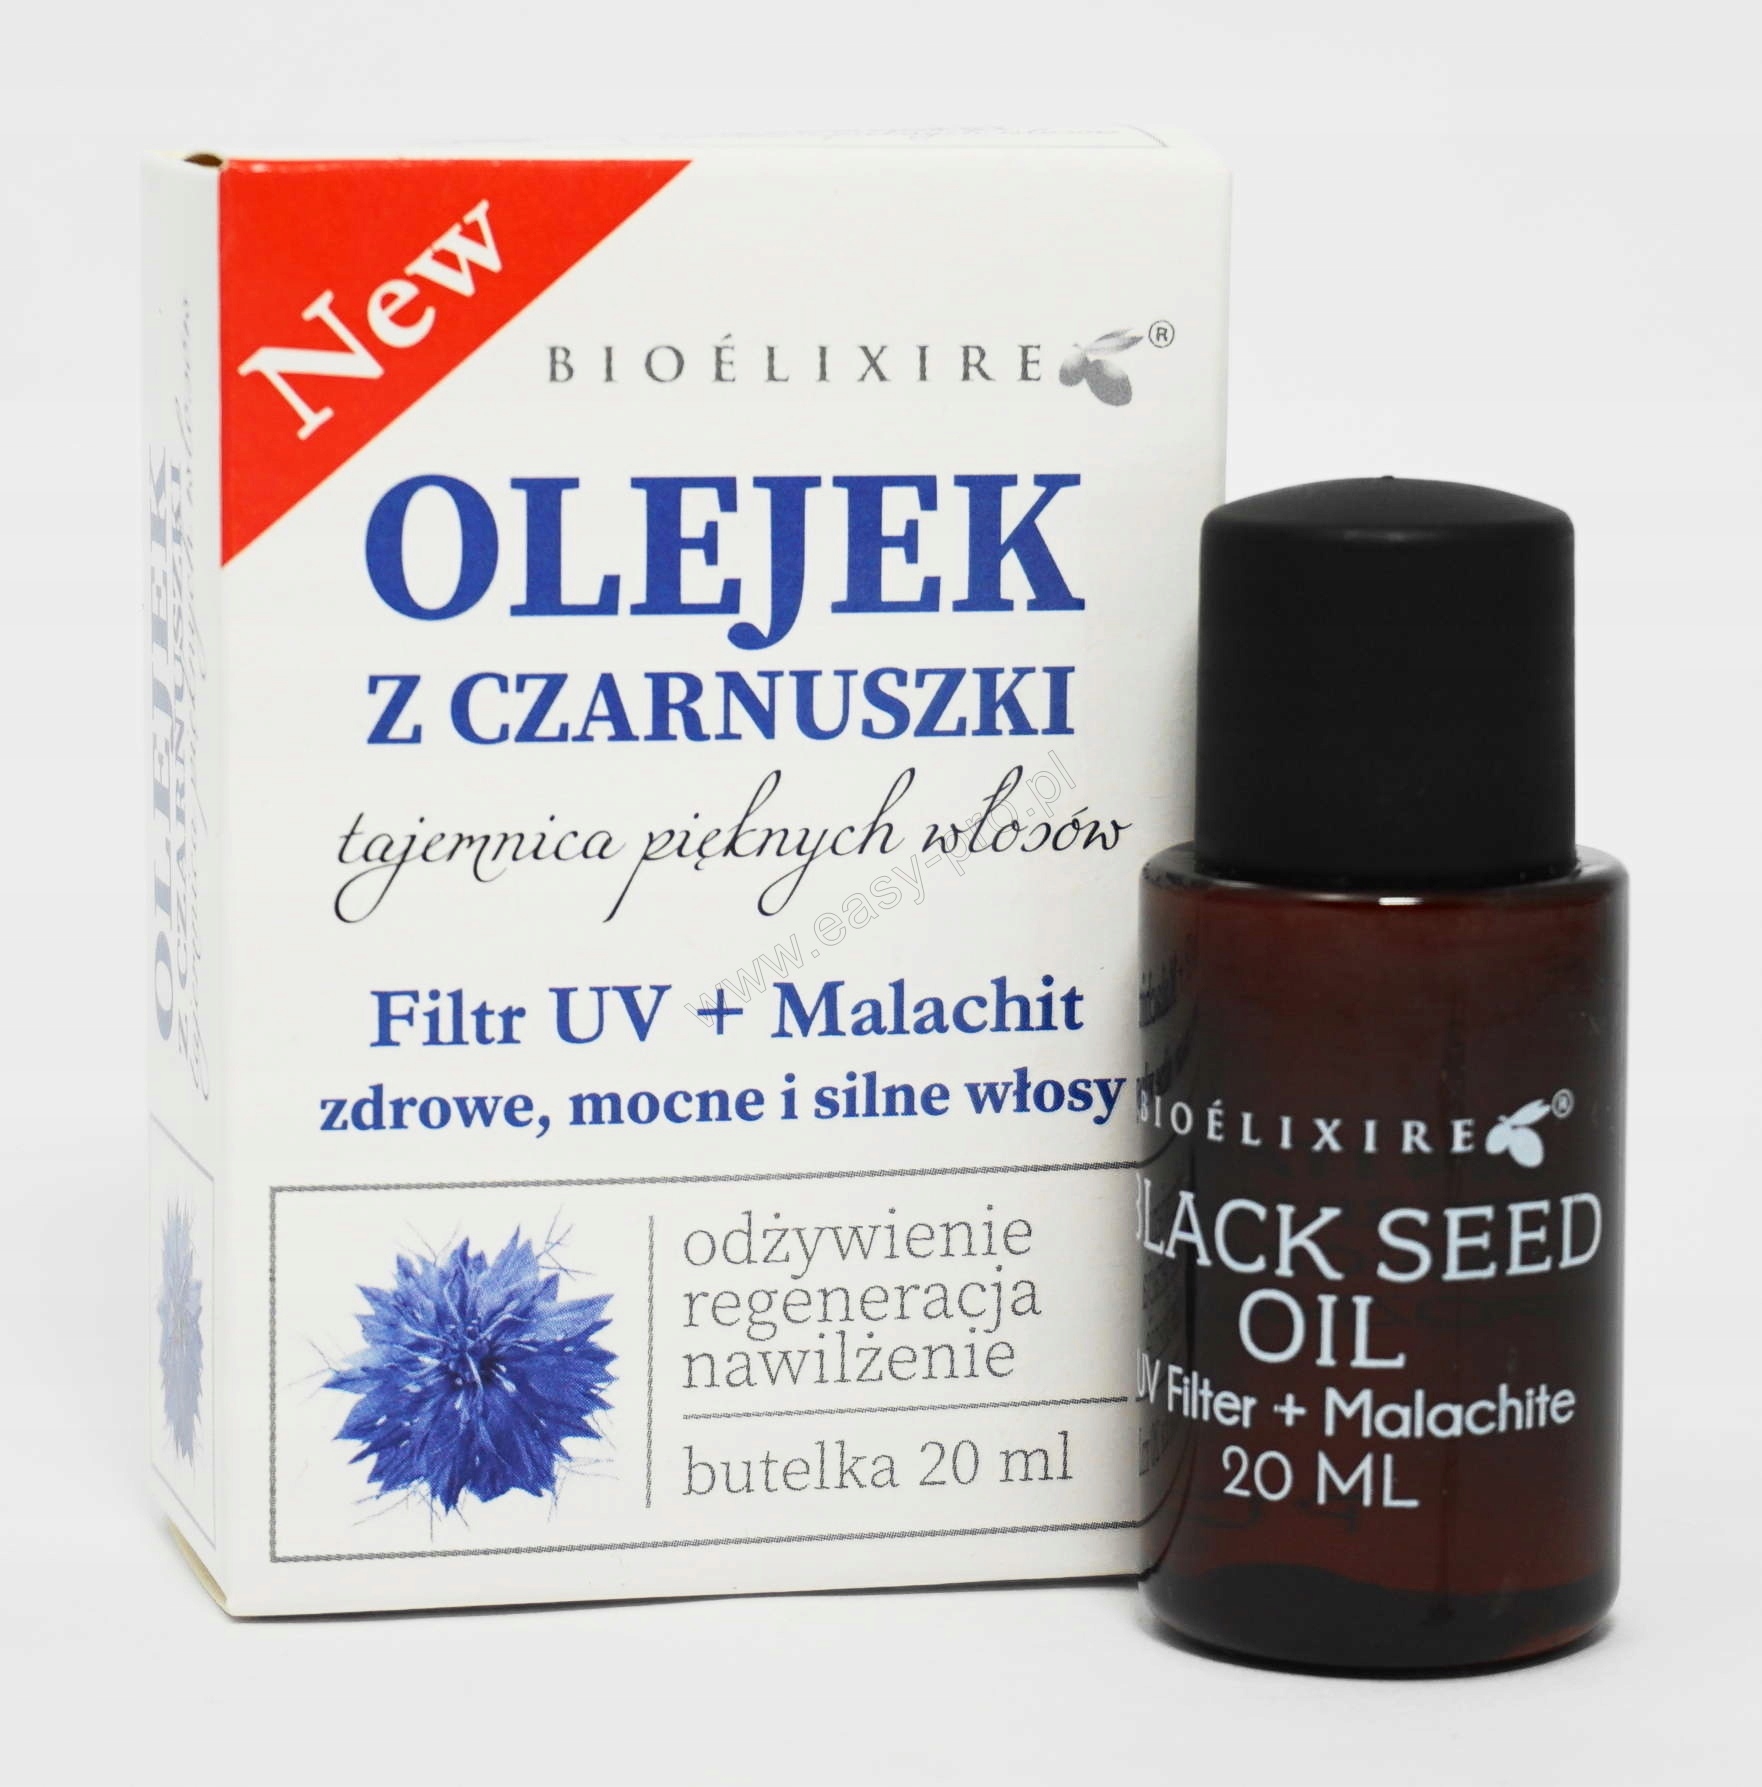 Bioelixire olejek z Czarnuszki 20ml